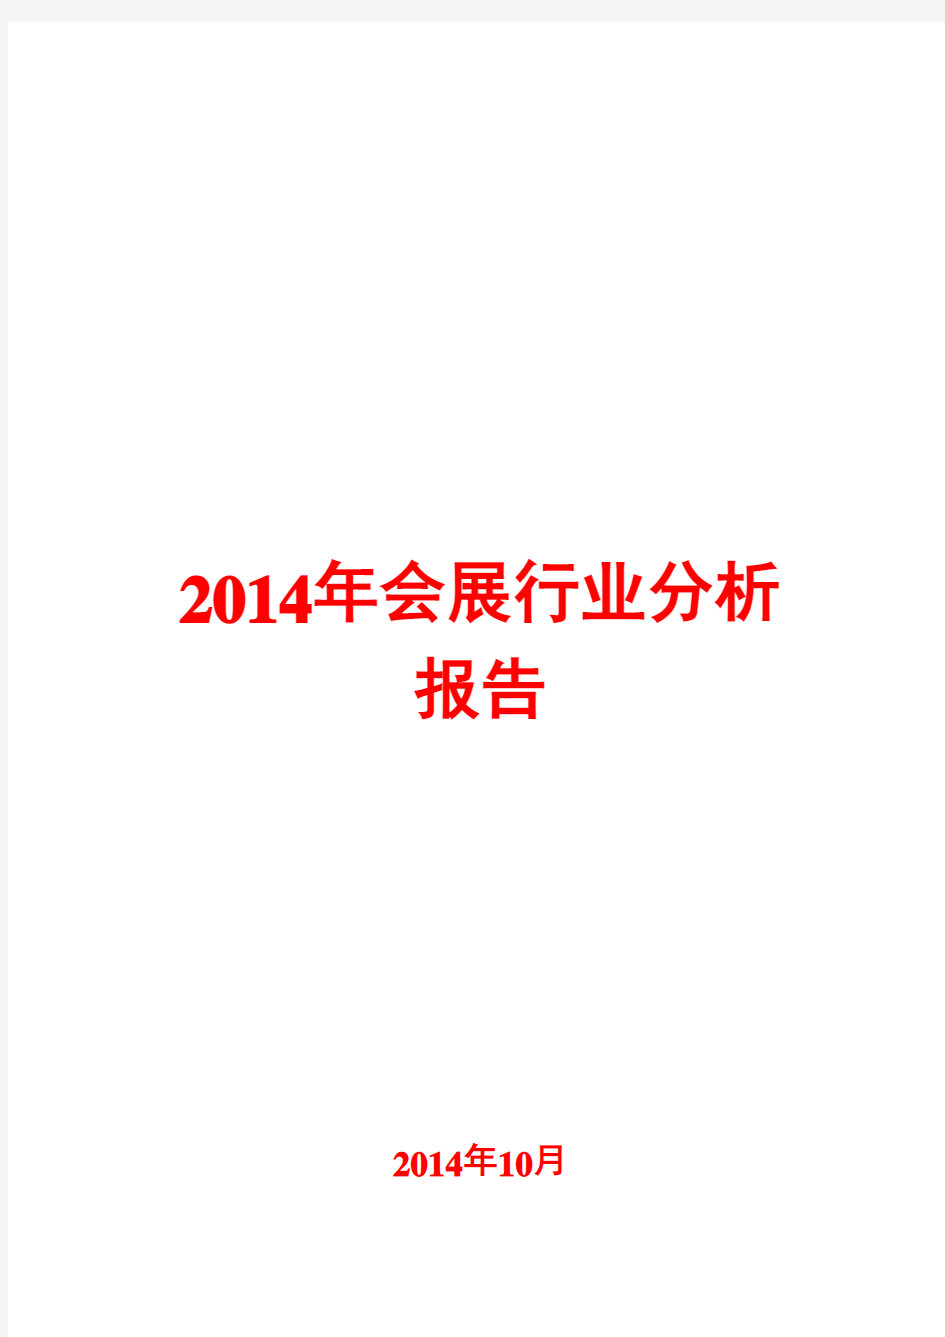 2014年会展行业分析报告